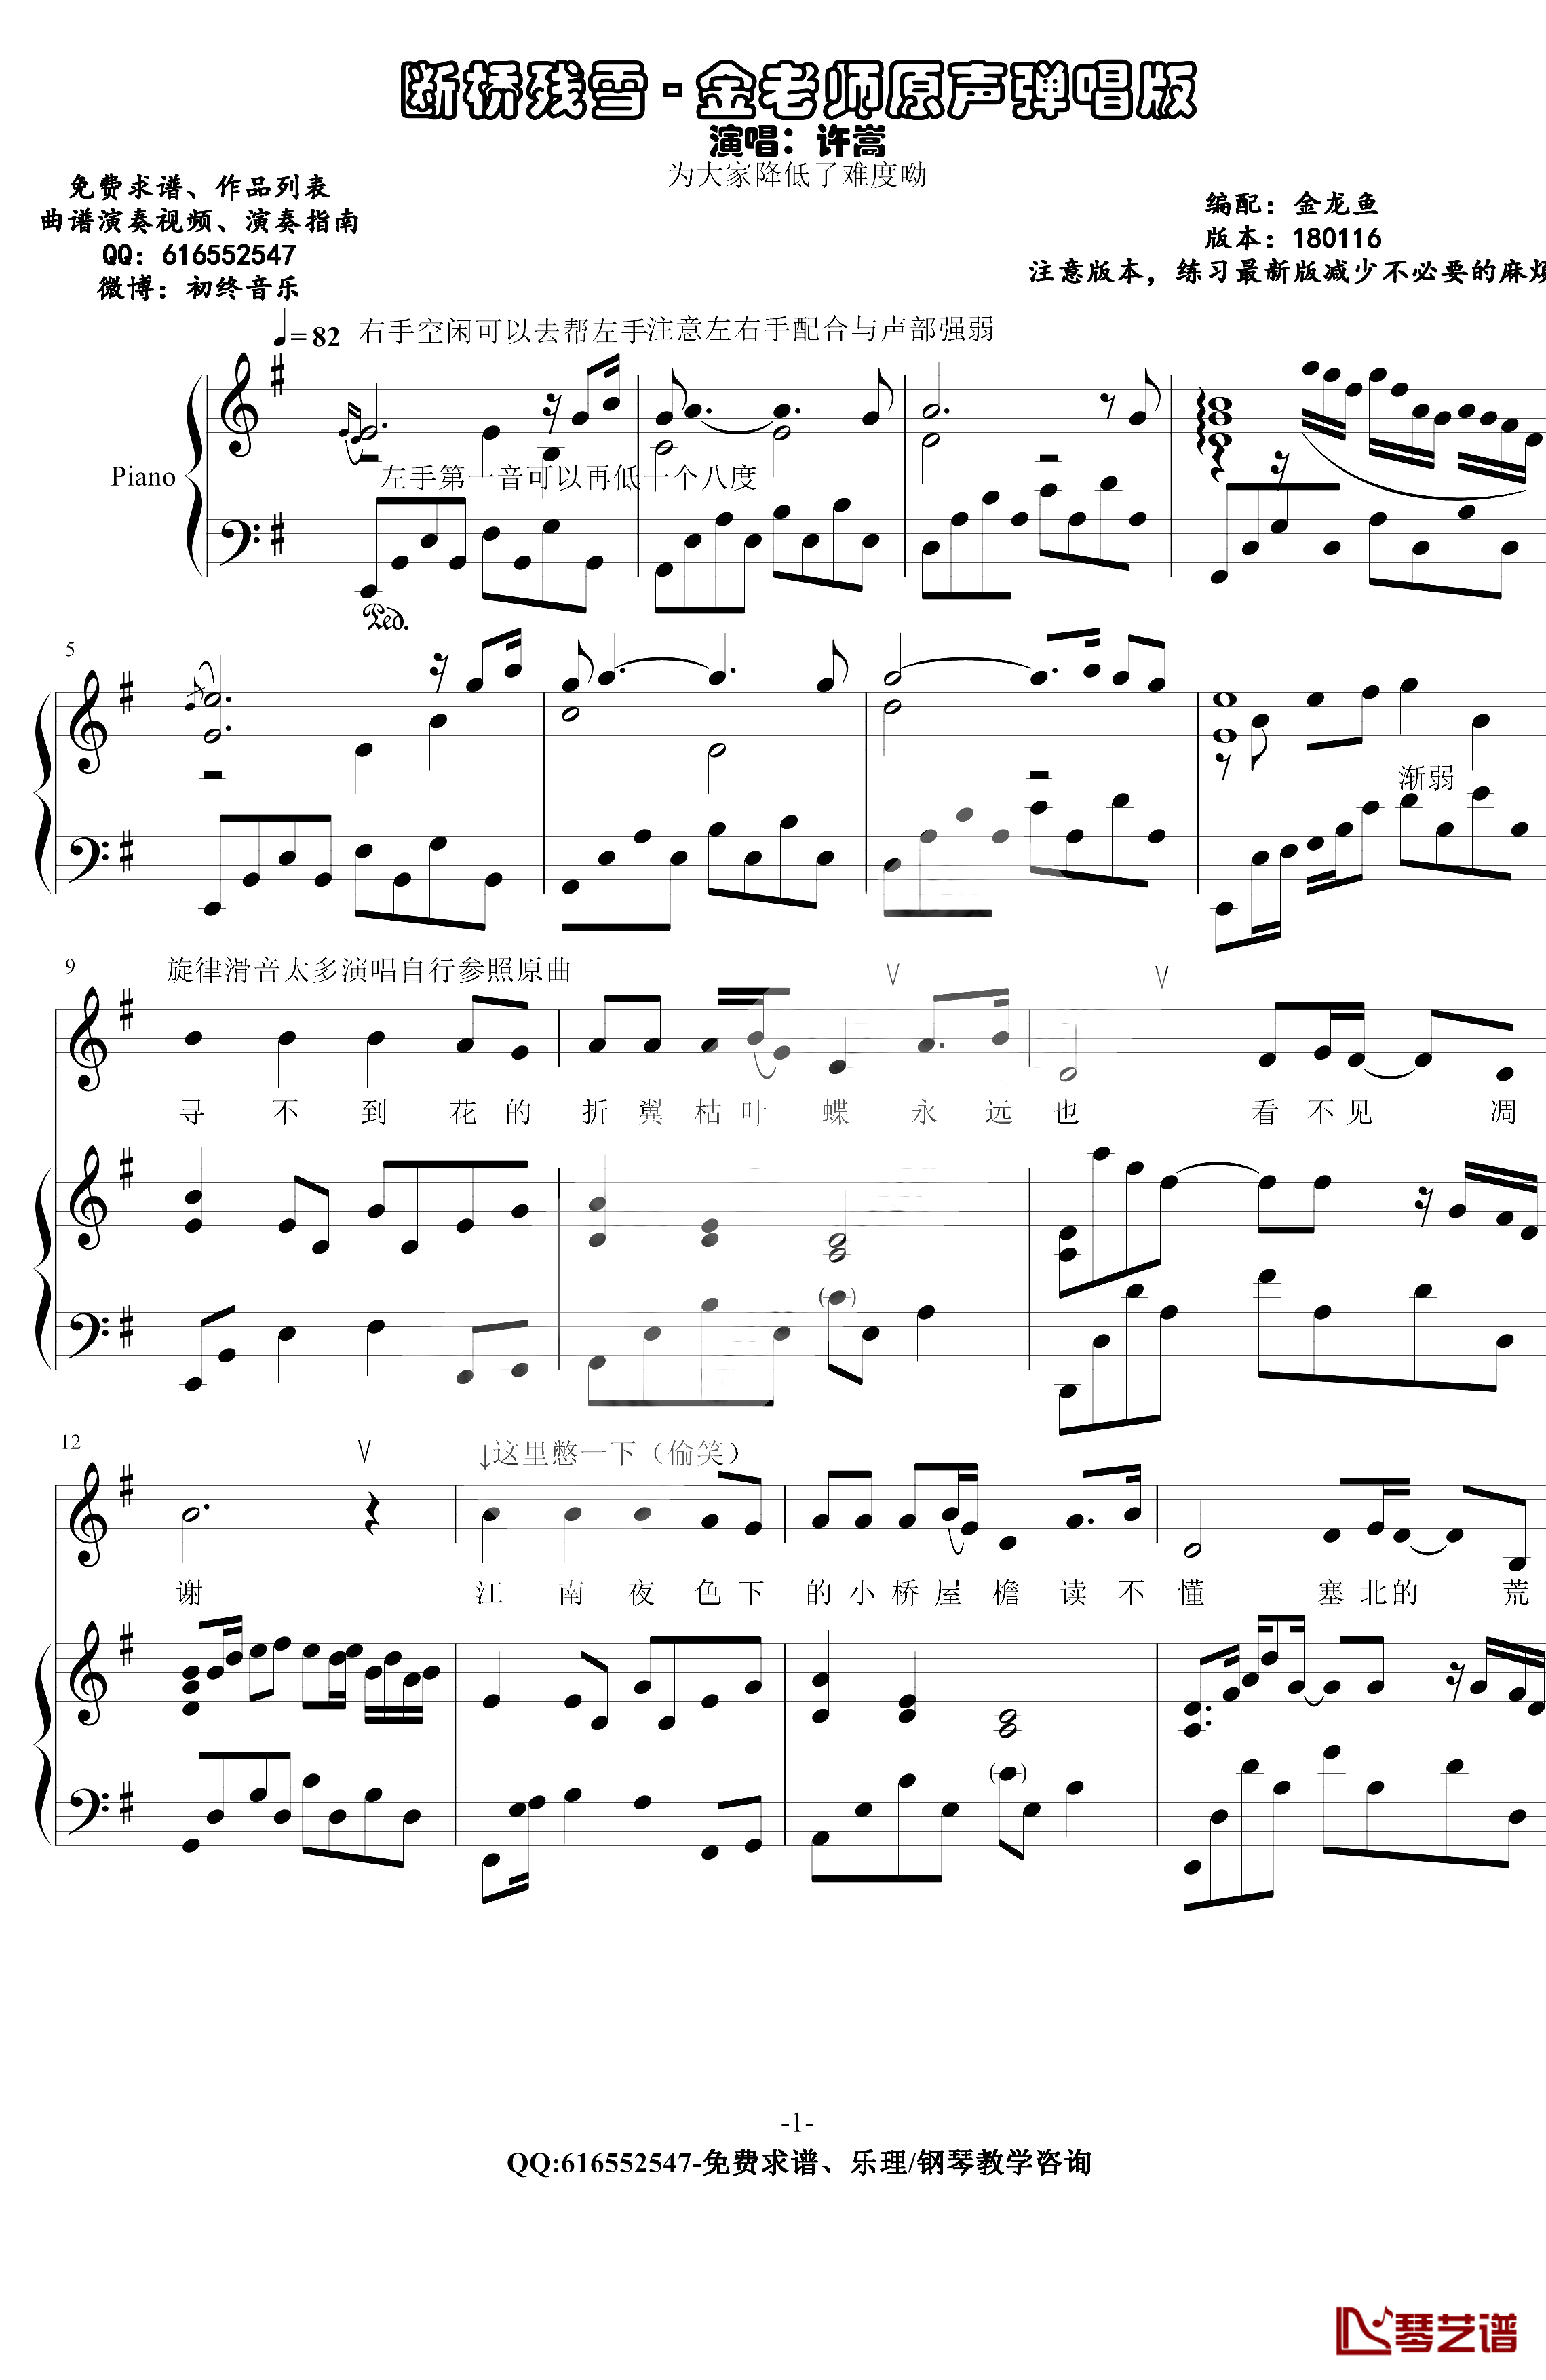 断桥残雪钢琴谱-金老师原生独奏版180116-许嵩1